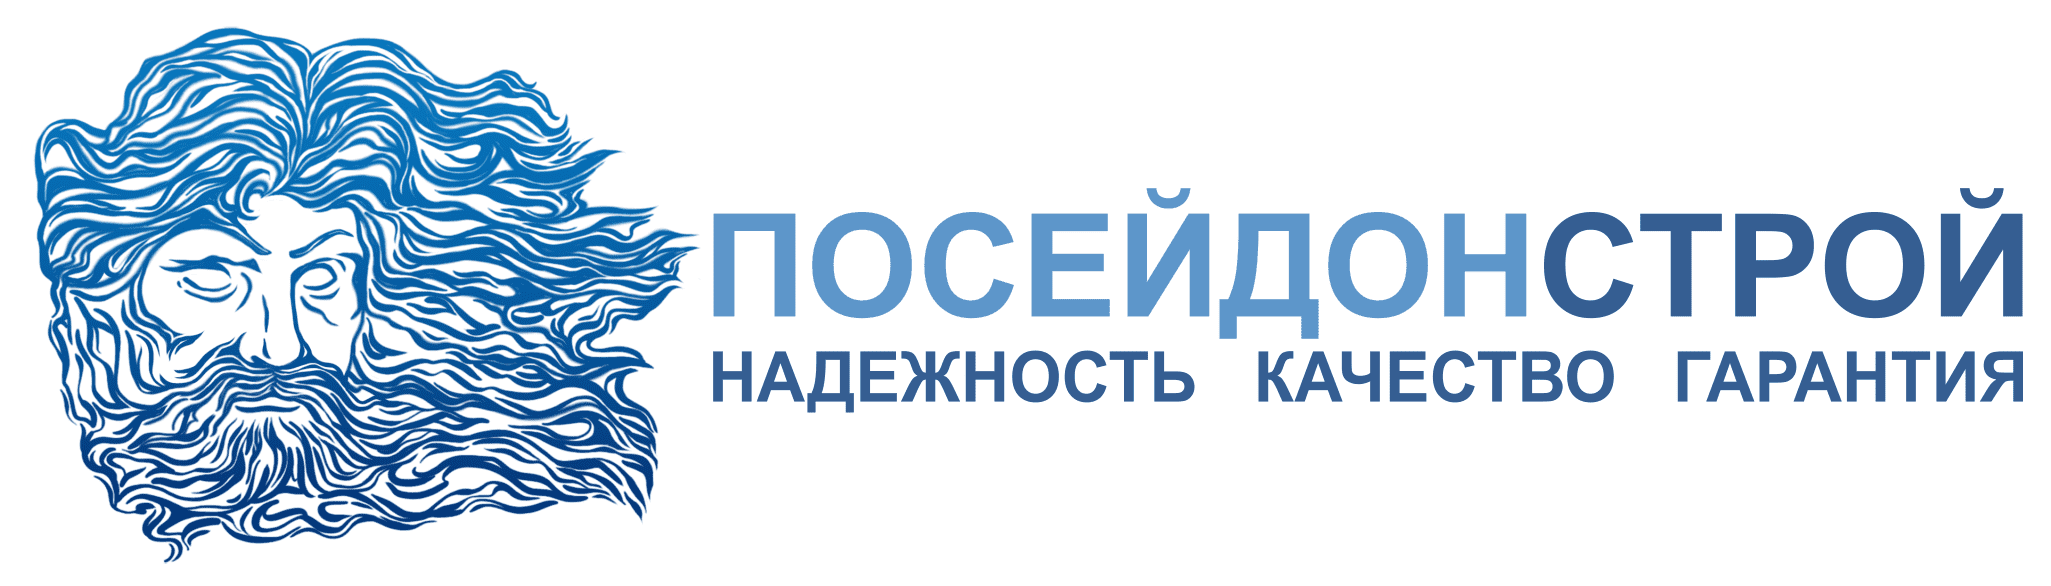 https://www.poseidonstroy.ru/wspr-images/logo.png